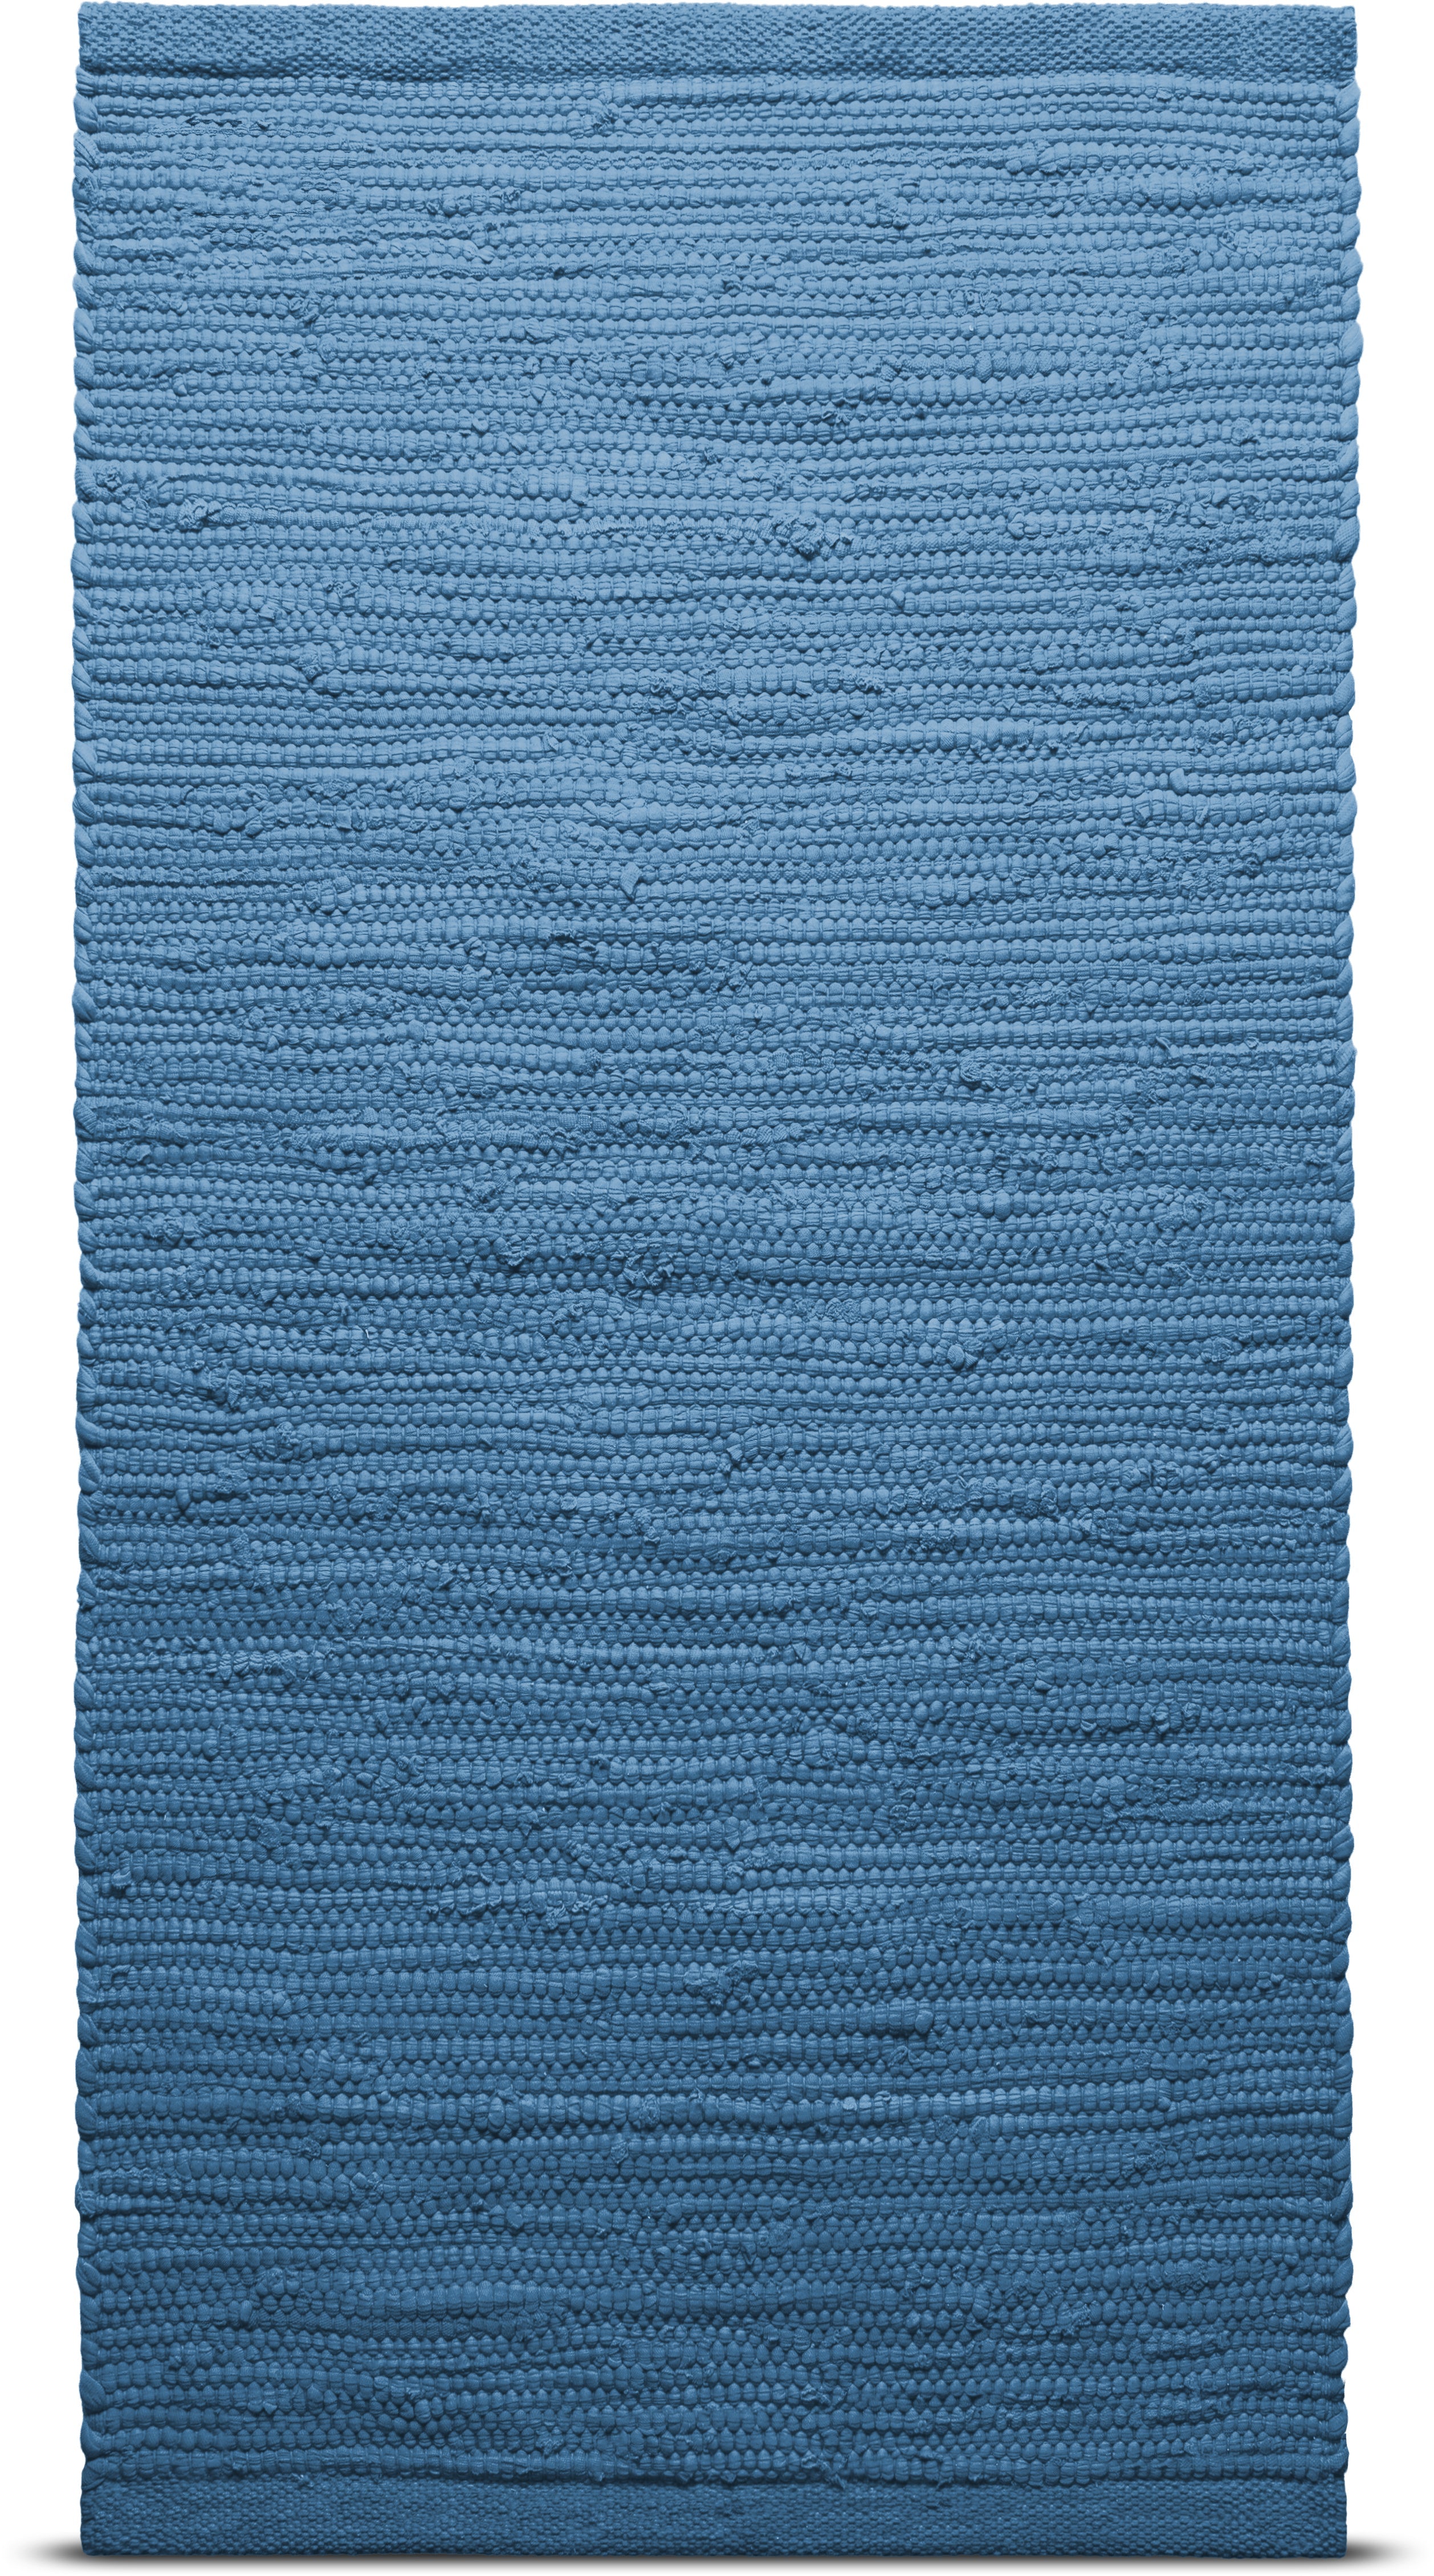 地毯固体棉地毯65 x 135厘米，太平洋